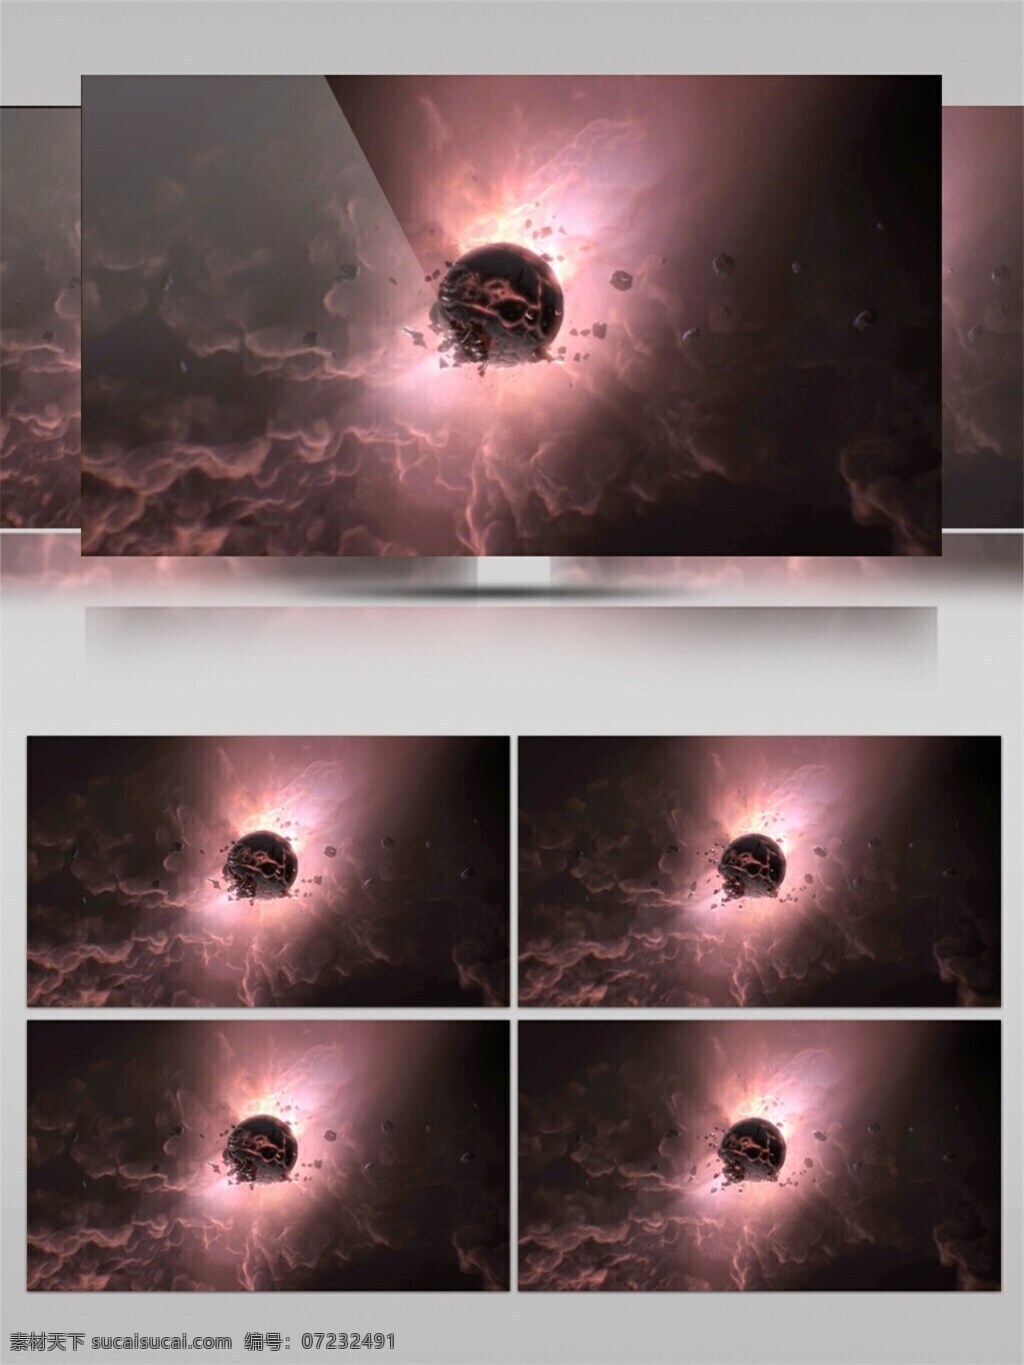 暗黑 光团 高清 视频 动态展示 宇宙物质 特效 背景 粒子物质 暗黑光团